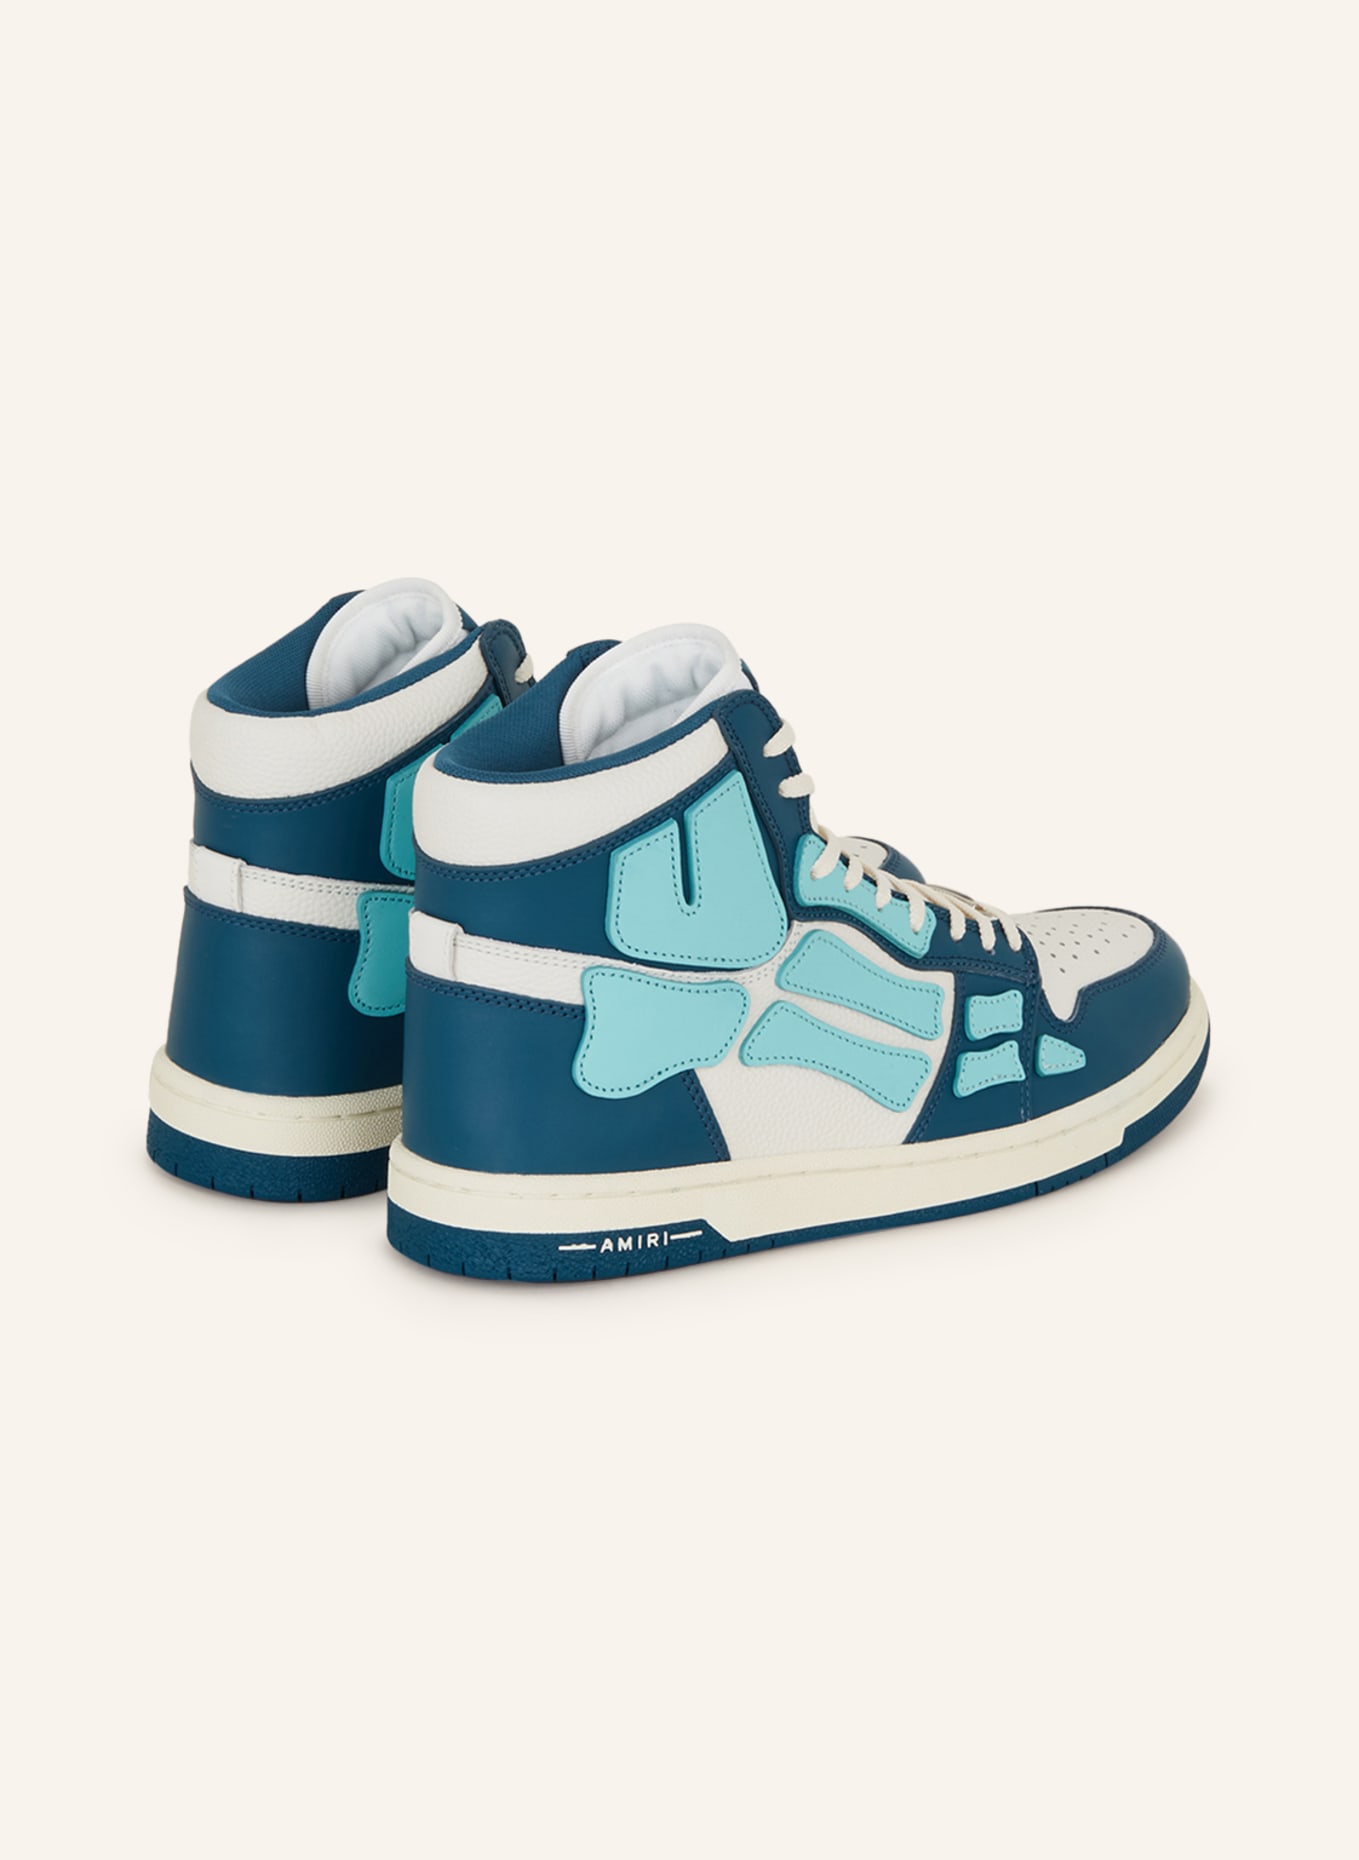 AMIRI Hightop-Sneaker SKELETON, Farbe: WEISS/ PETROL/ TÜRKIS (Bild 2)